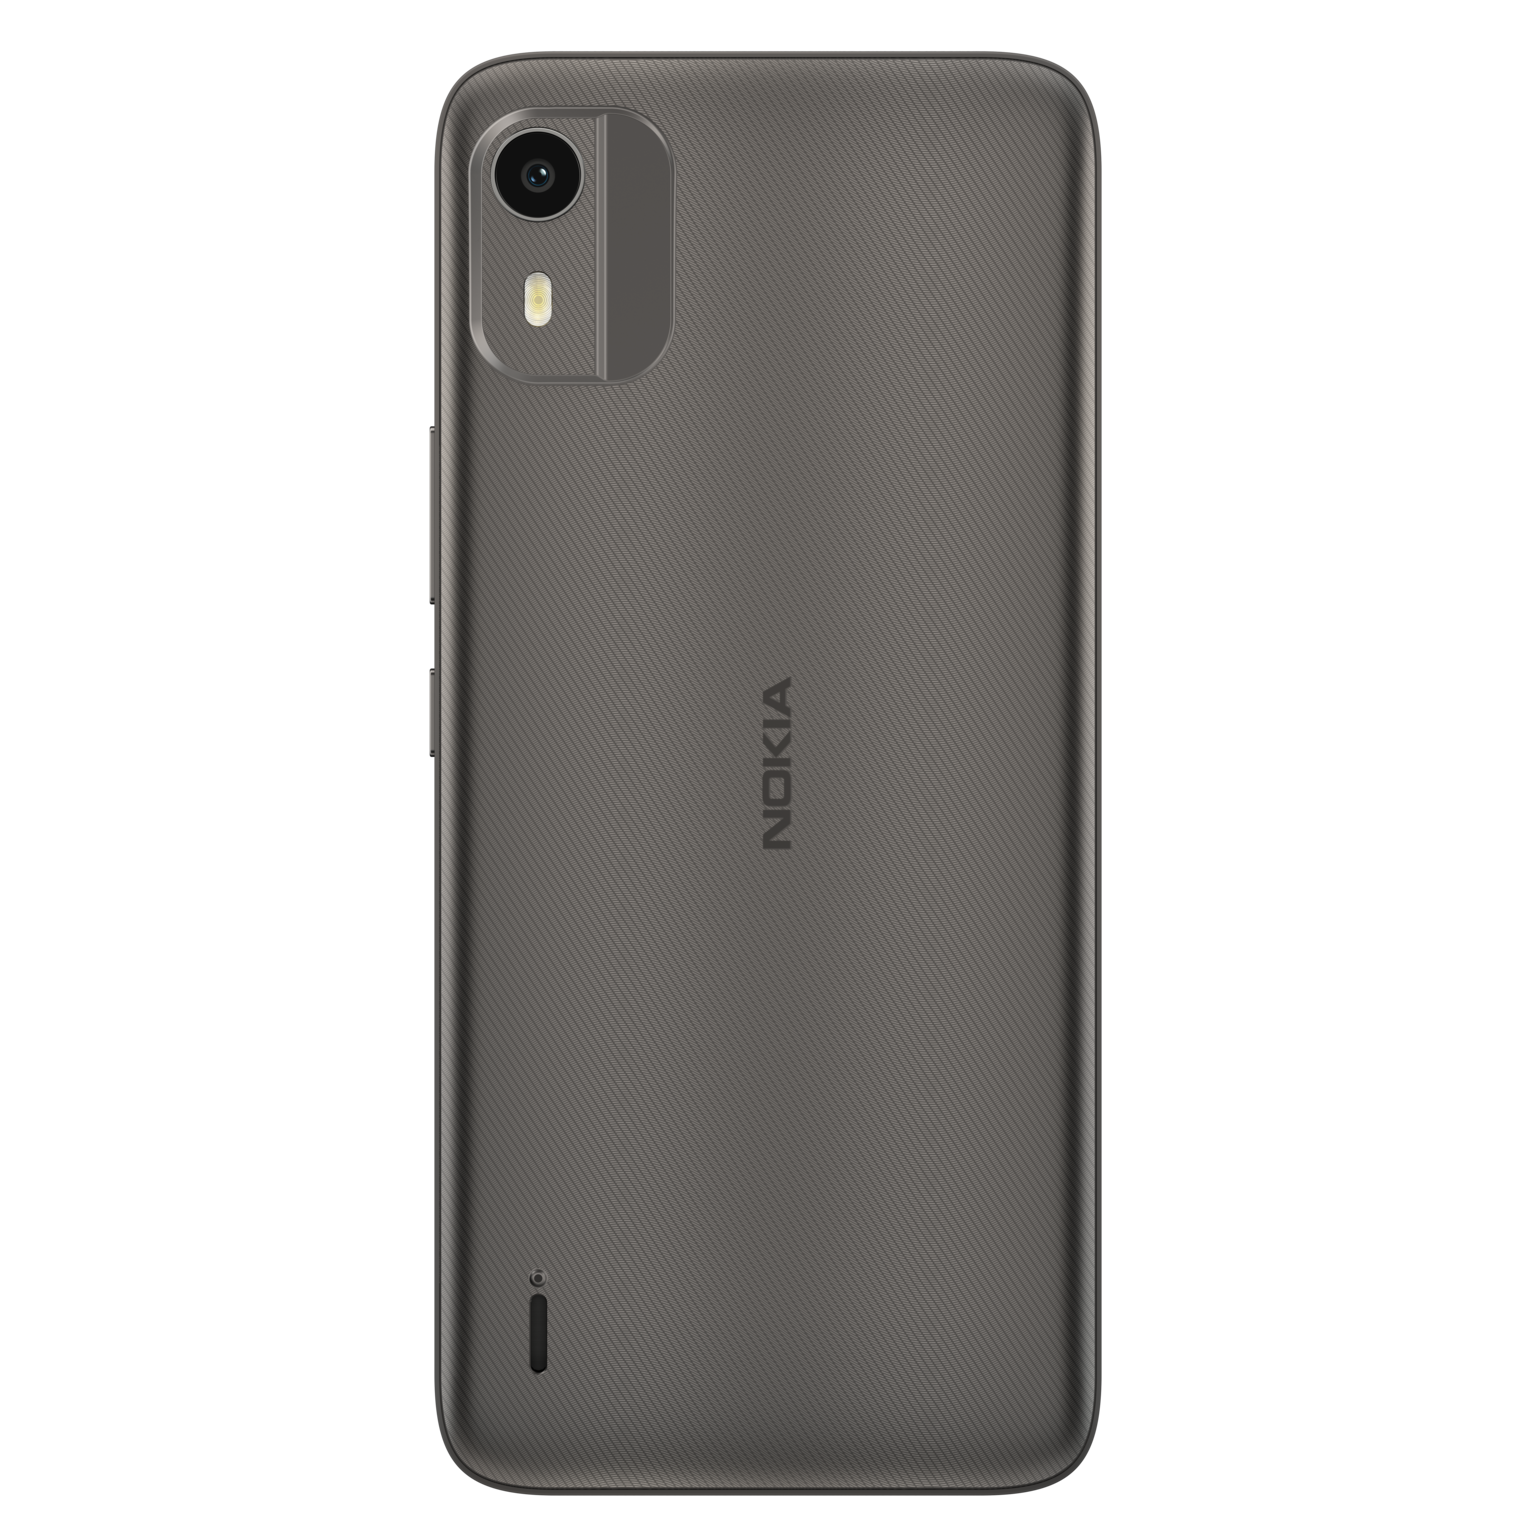 Nokia C12 04 | Nokia C12 | Nokia C12 ตระกูล C ซีรีส์ พร้อมขาย 2 ก.พ.นี้ เพียง 2,990 บาท